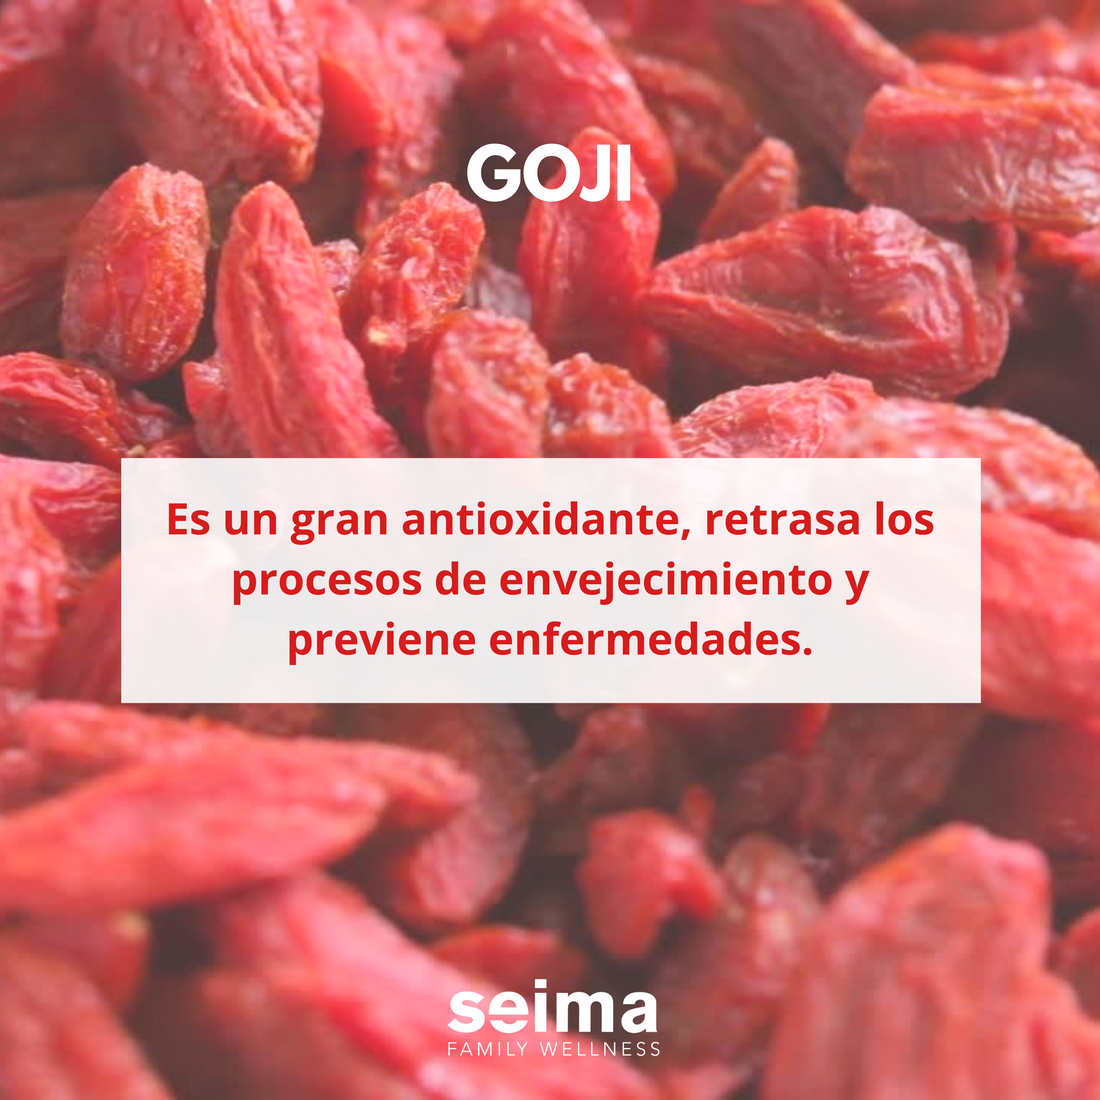 El Goji es considerado un súper alimento debido a sus grandes beneficios.